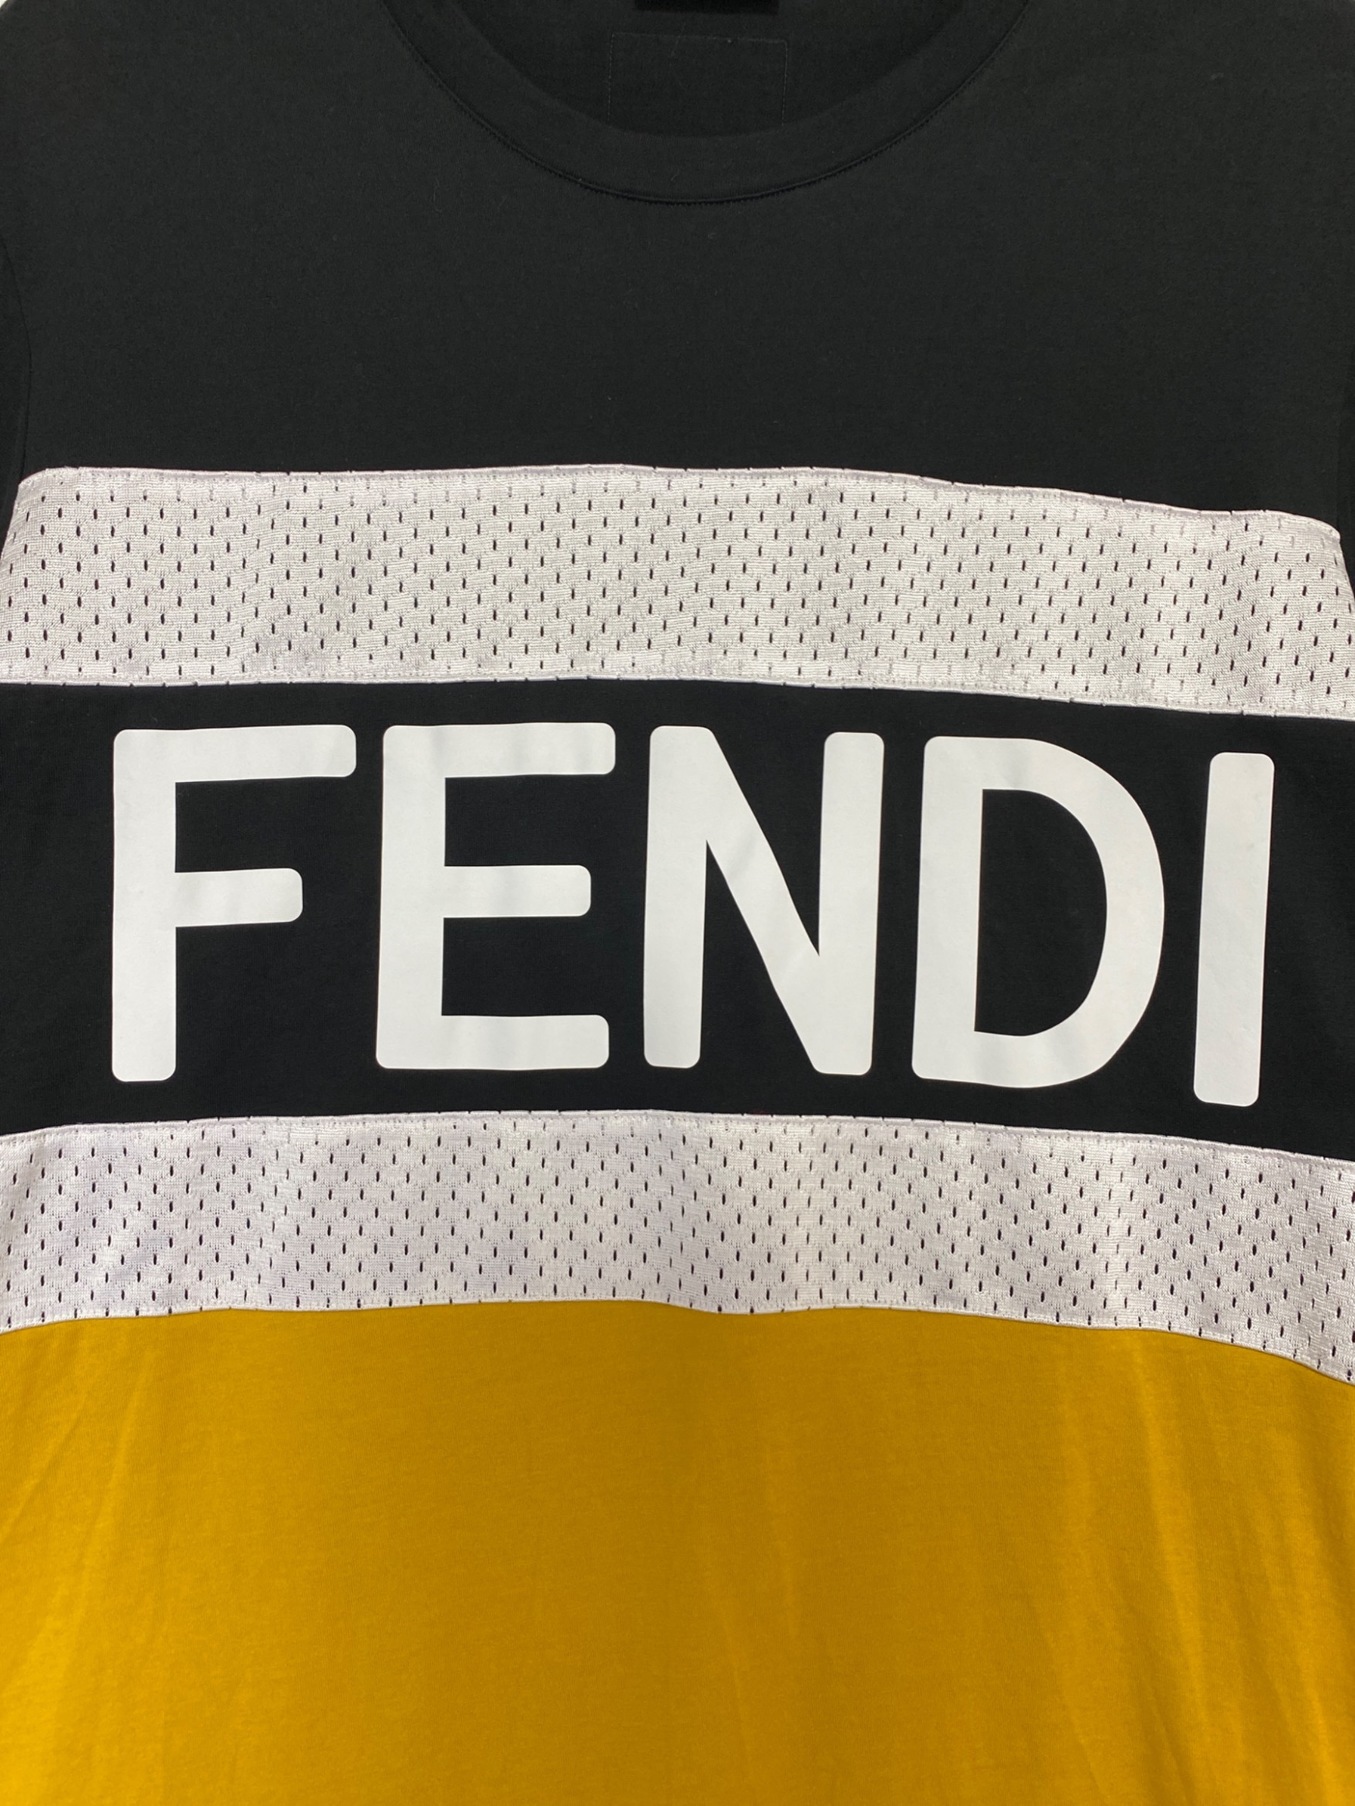 FENDI (フェンディ) ロゴメッシュ半袖Tシャツ ブラック サイズ:L